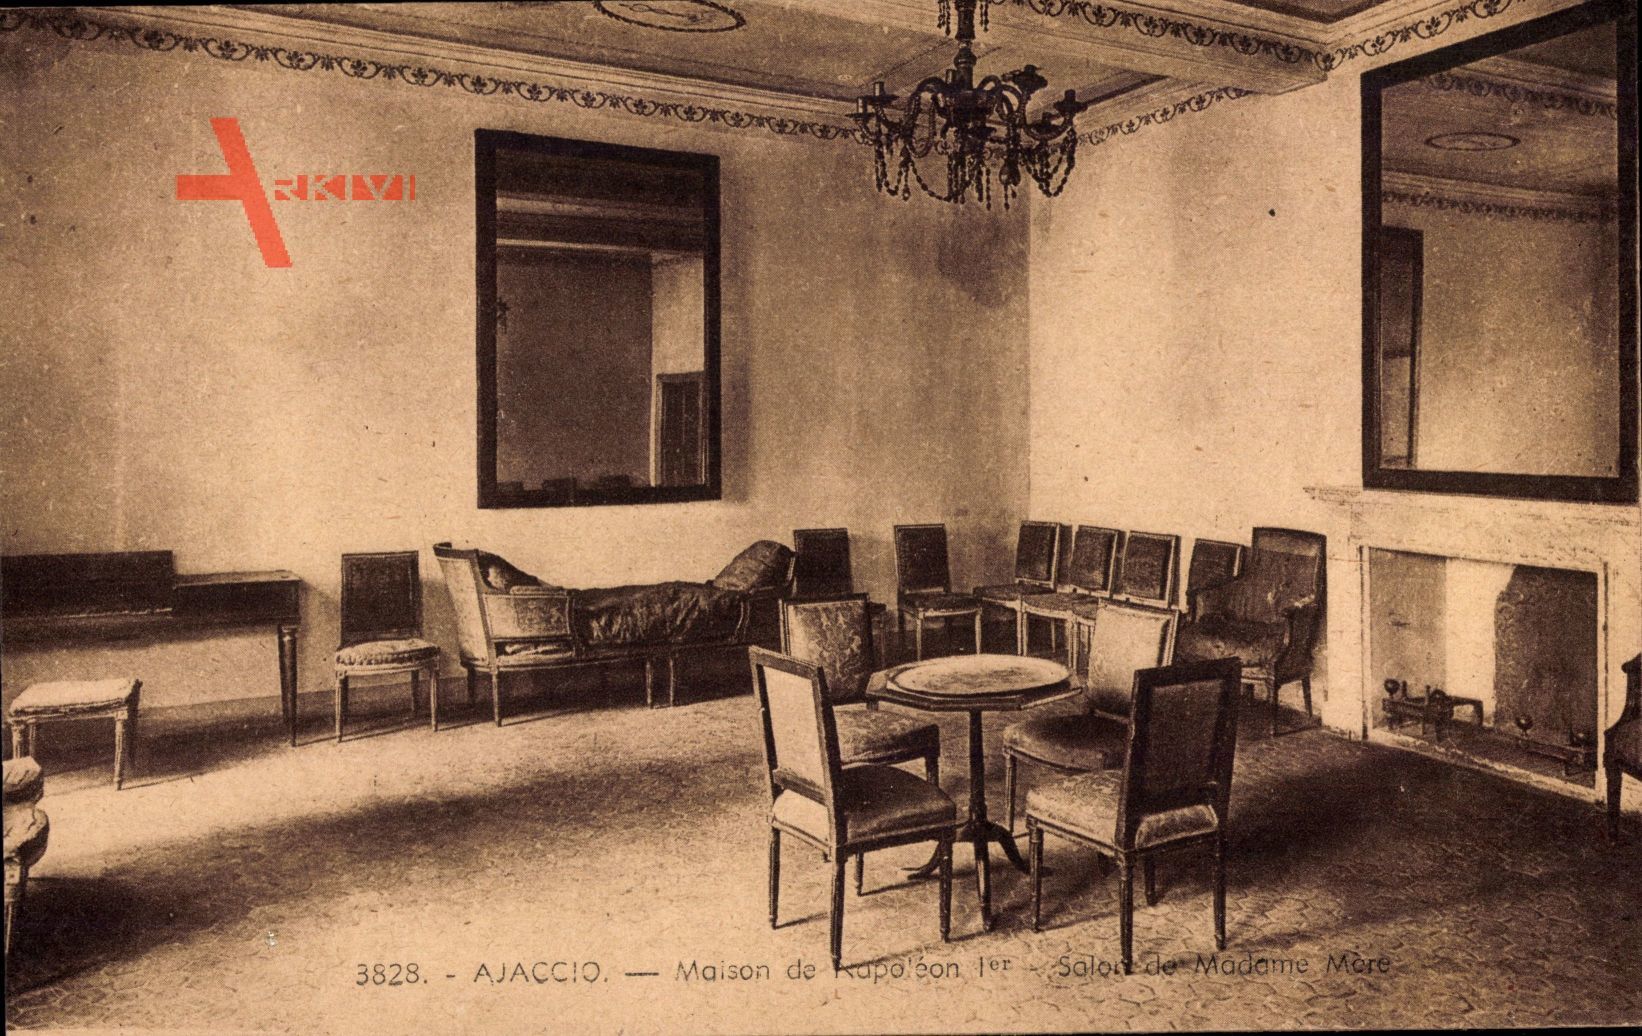 Ajaccio Corse du Sud, Maison de Napoleon 1er, Salon de la Madame Mere